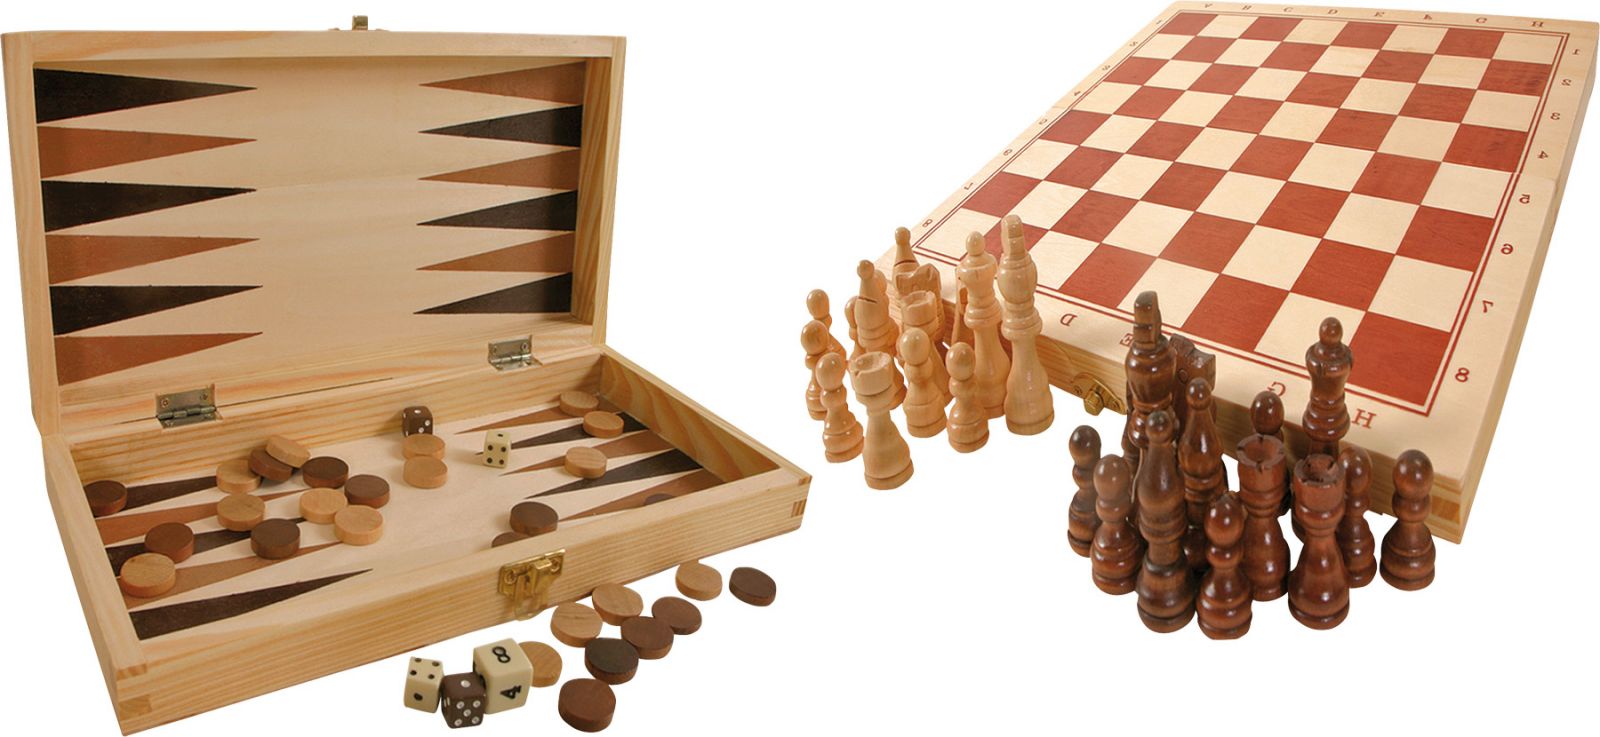 Dřevěné hračky small foot Tradiční hry v dřevěné krabičce